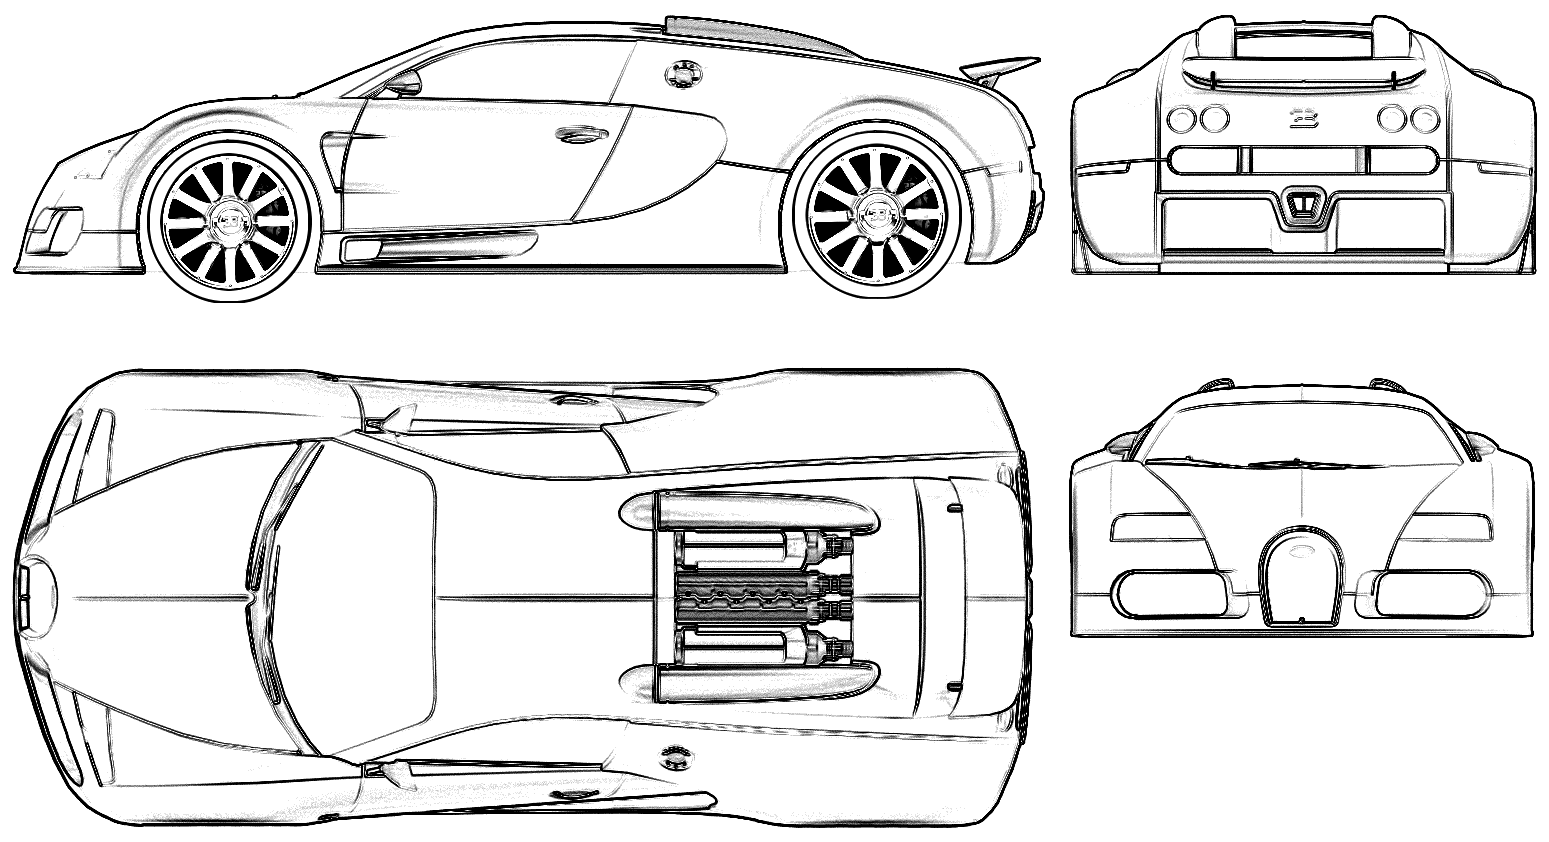 Bil Bugatti 16-4 Veyron